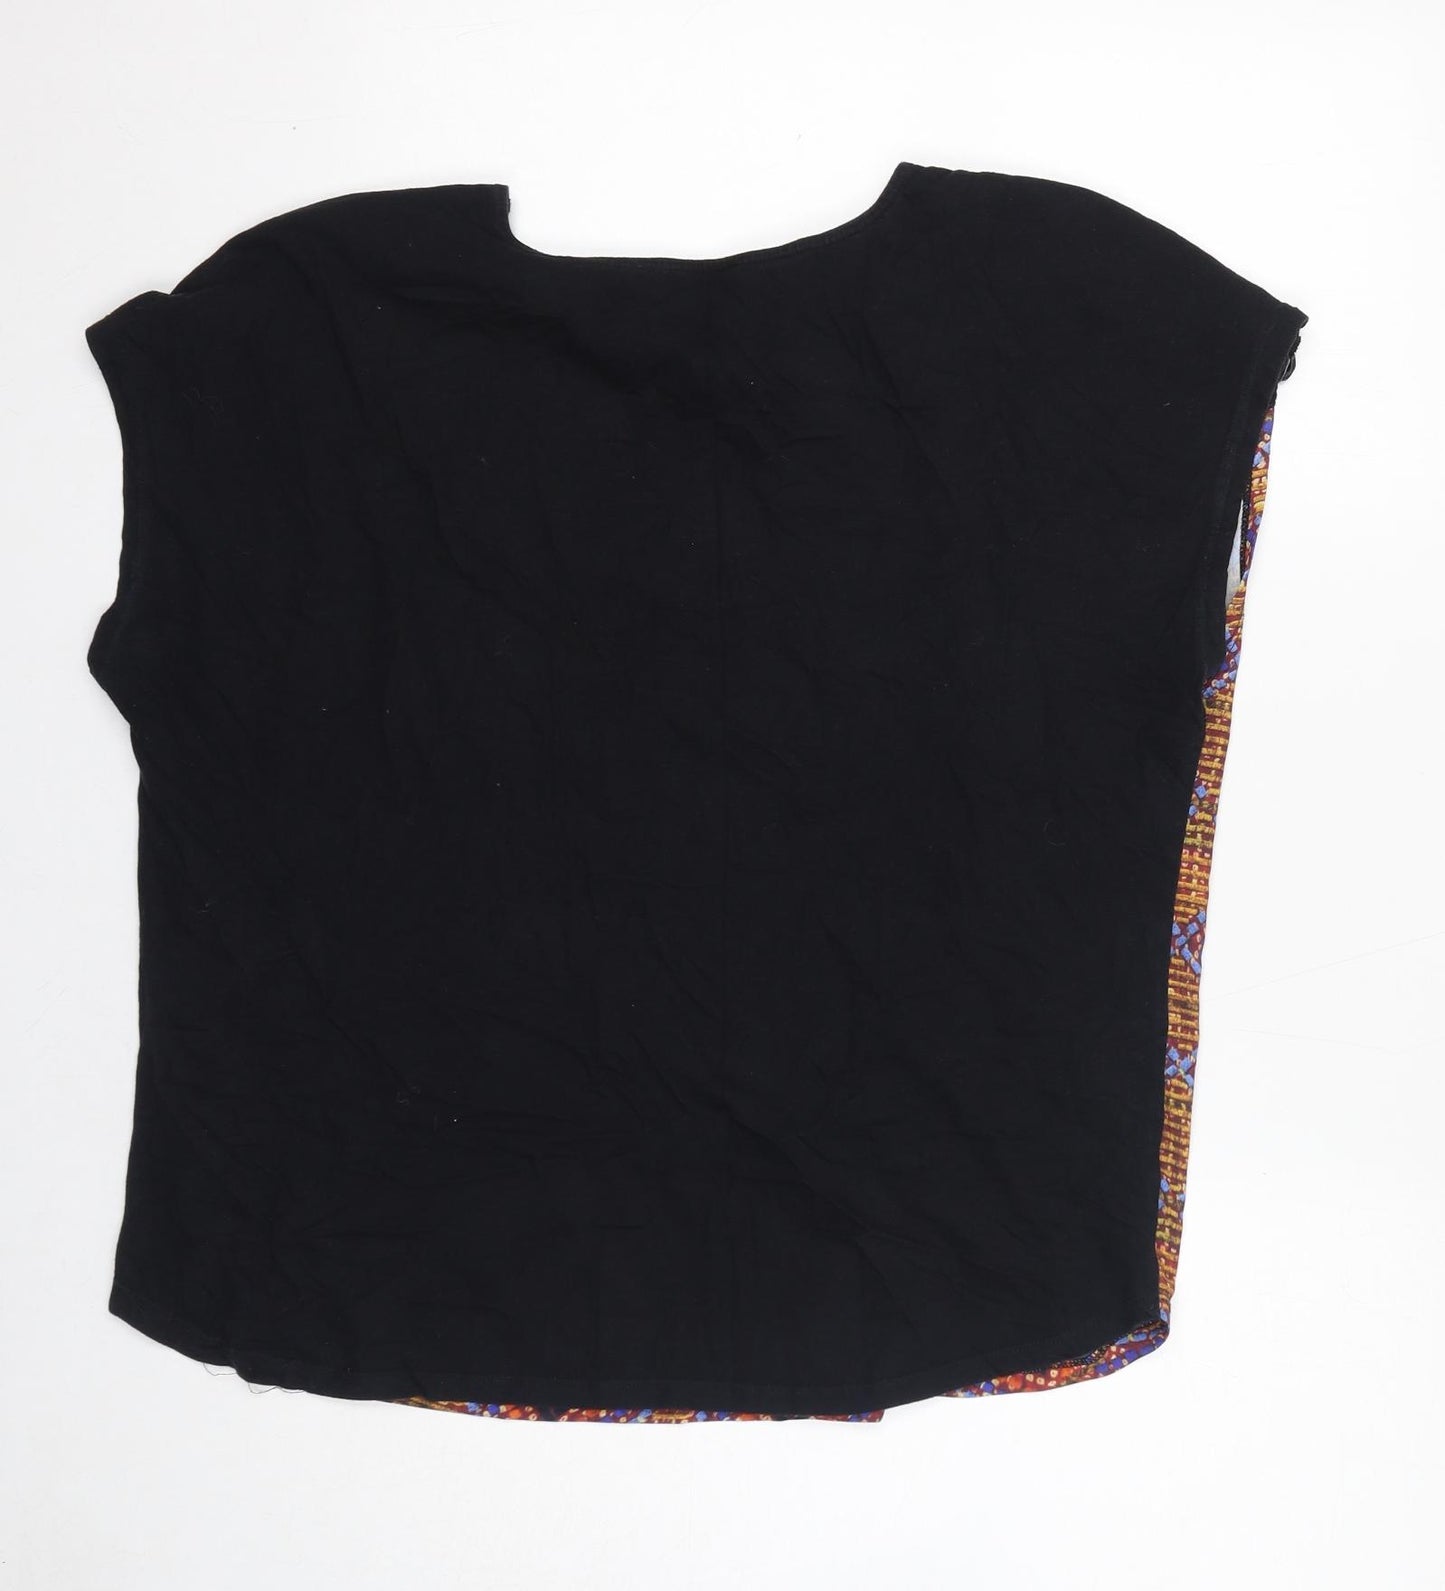 Indigo Womens Black Geometric Polyester Basic Blouse Size 18 Boat Neck